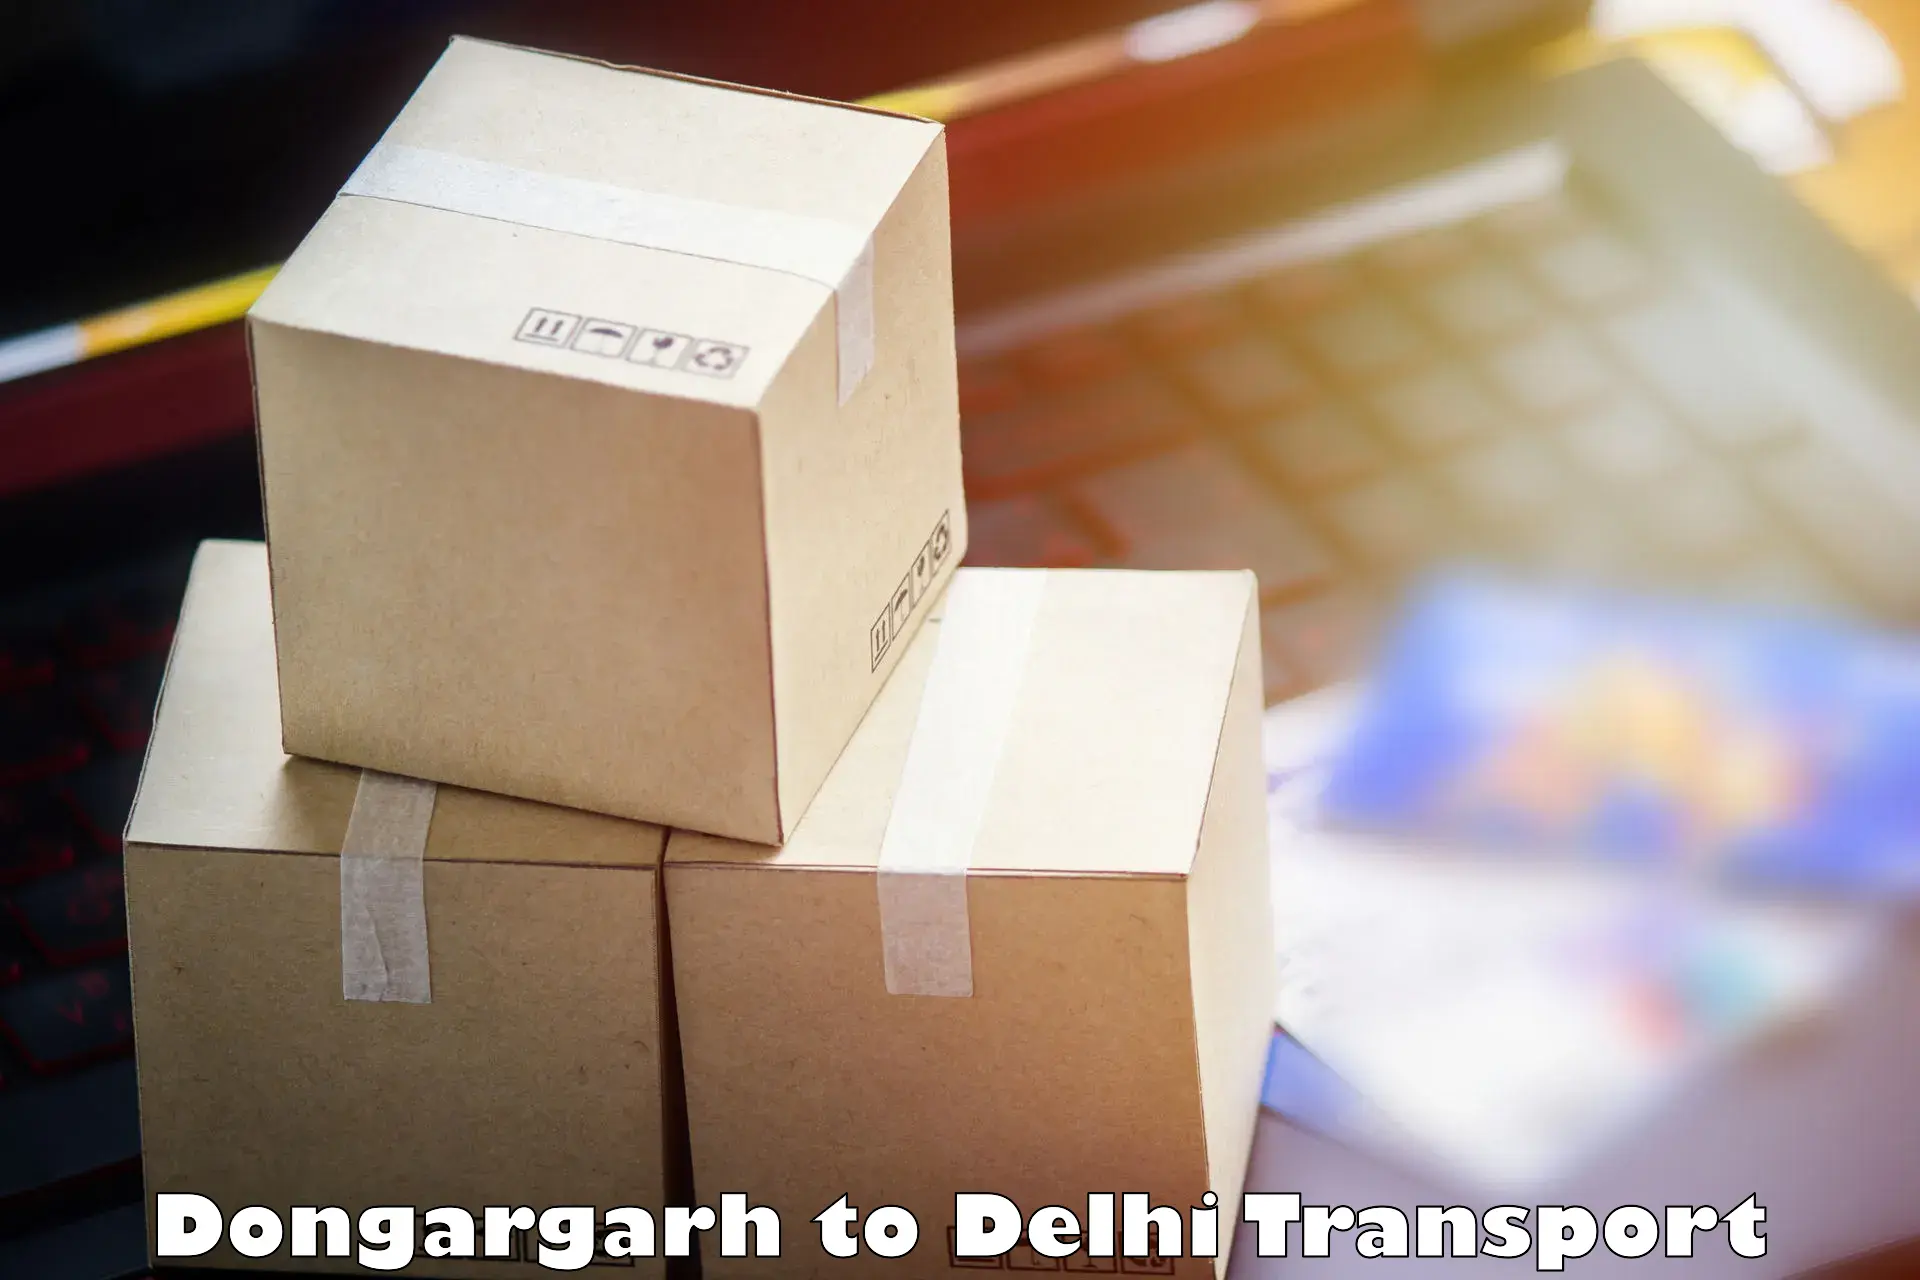 Pick up transport service Dongargarh to Kalkaji